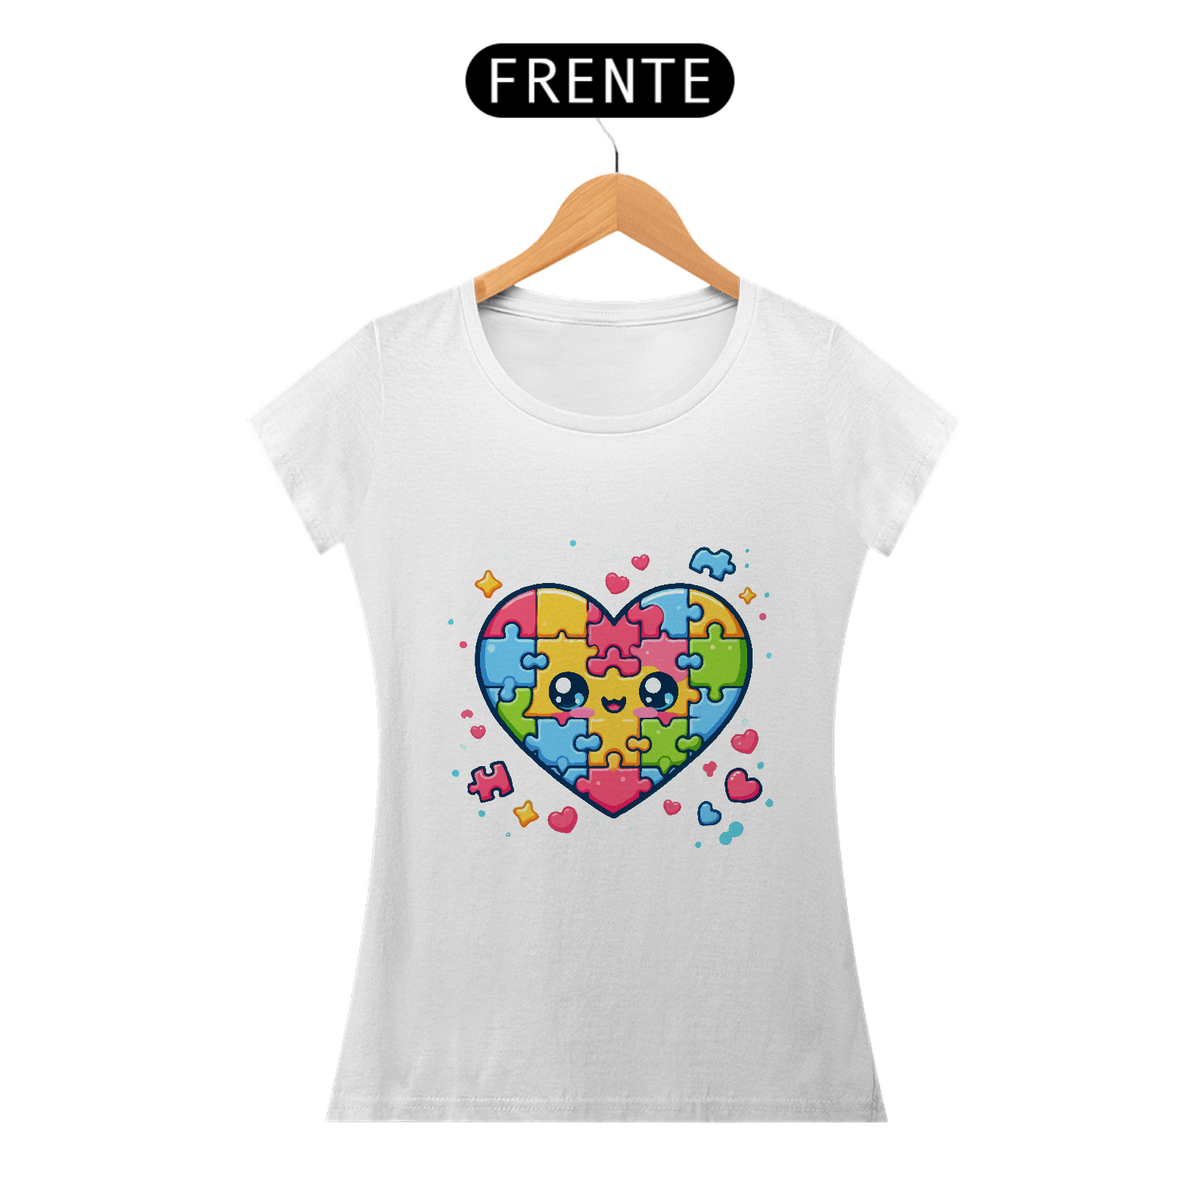 Nome do produto: Camisa feminina meu coração está completo